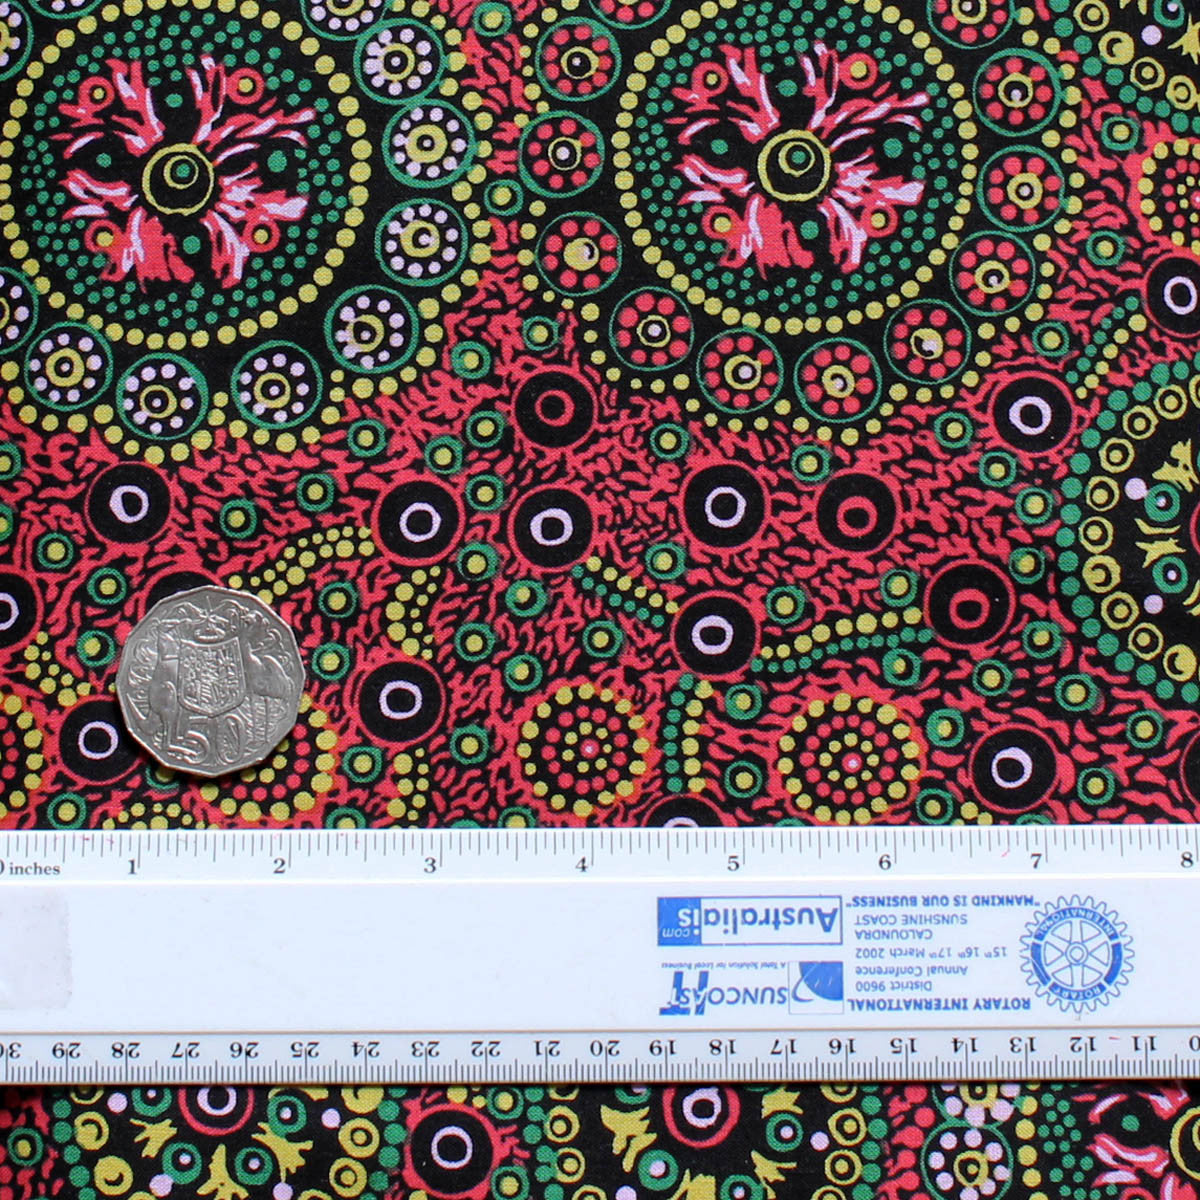 WILD DESERT FLOWERS RED by Australian Aboriginal Artist Vanessa Inkamala